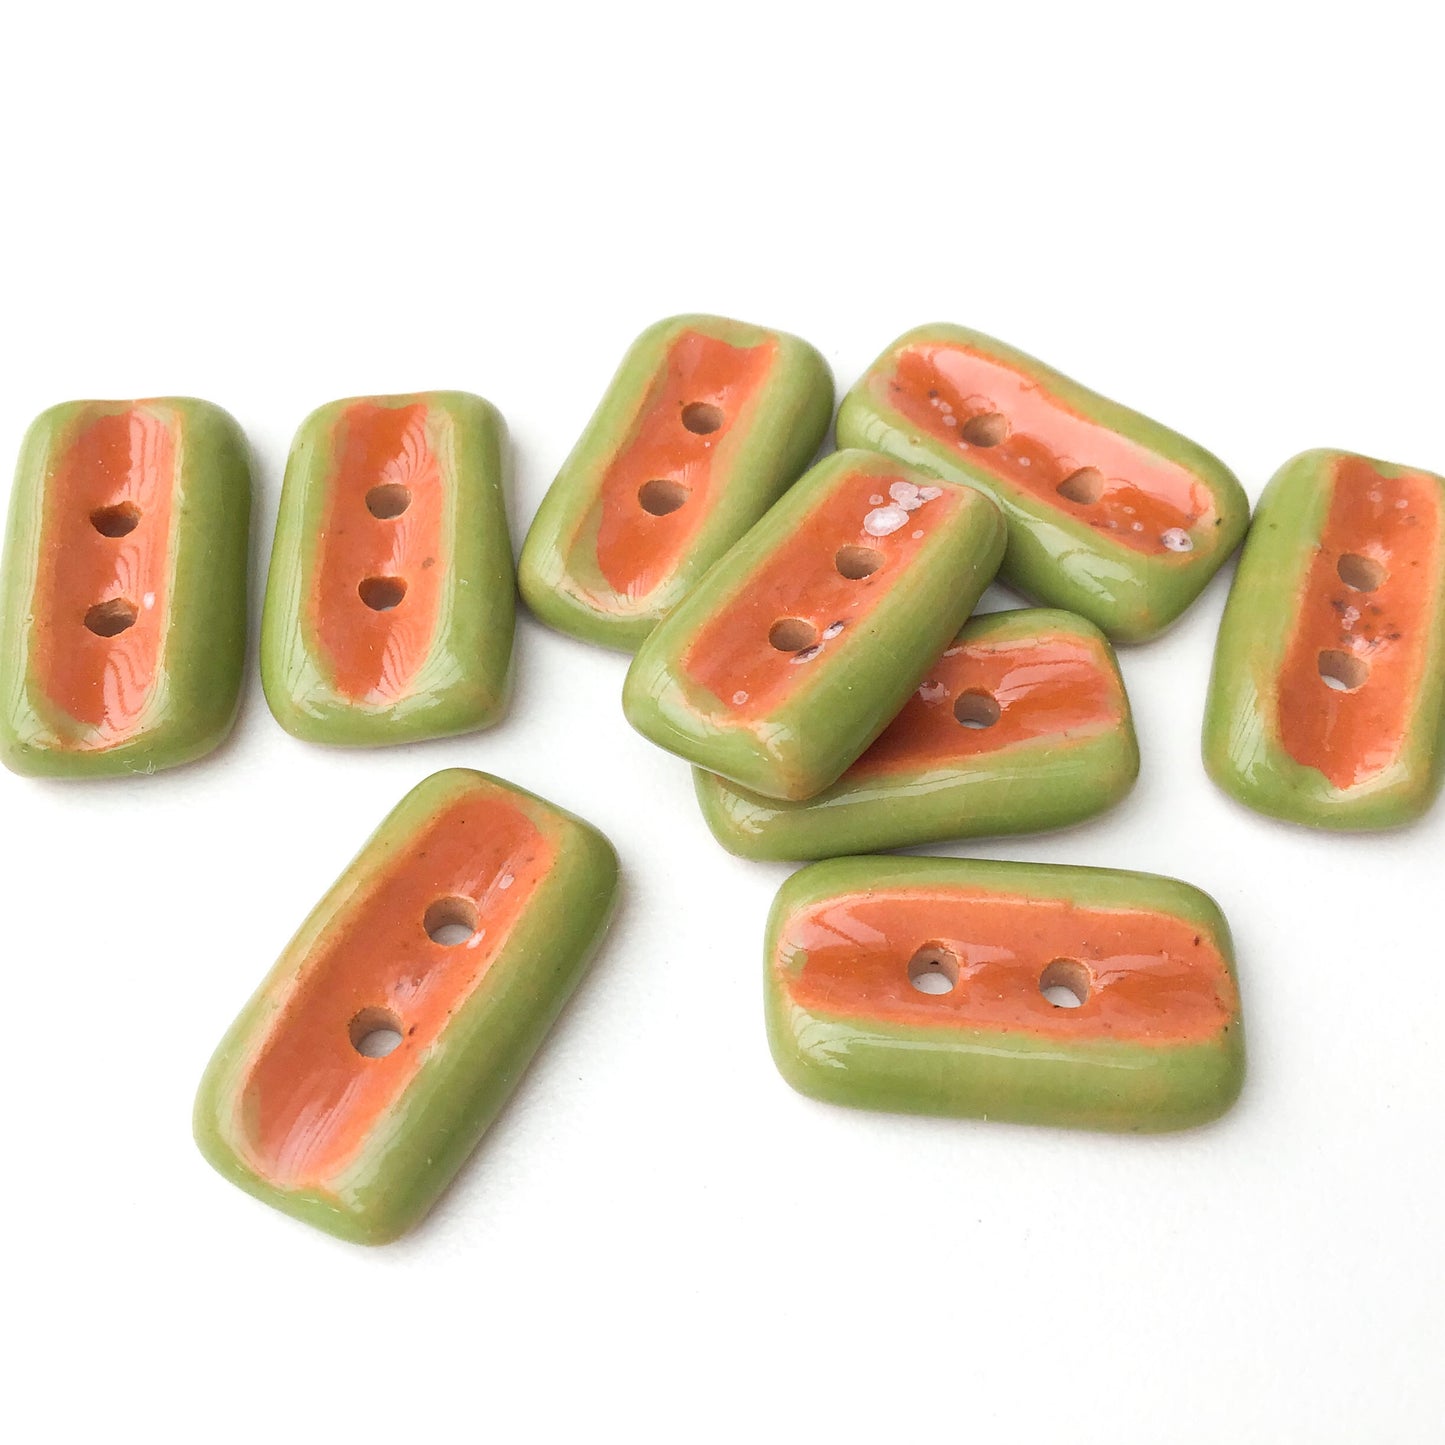 Speckled Burnt Orange + Olive Green Ceramic Buttons - 7/16" x 3/4" - 9 Pack